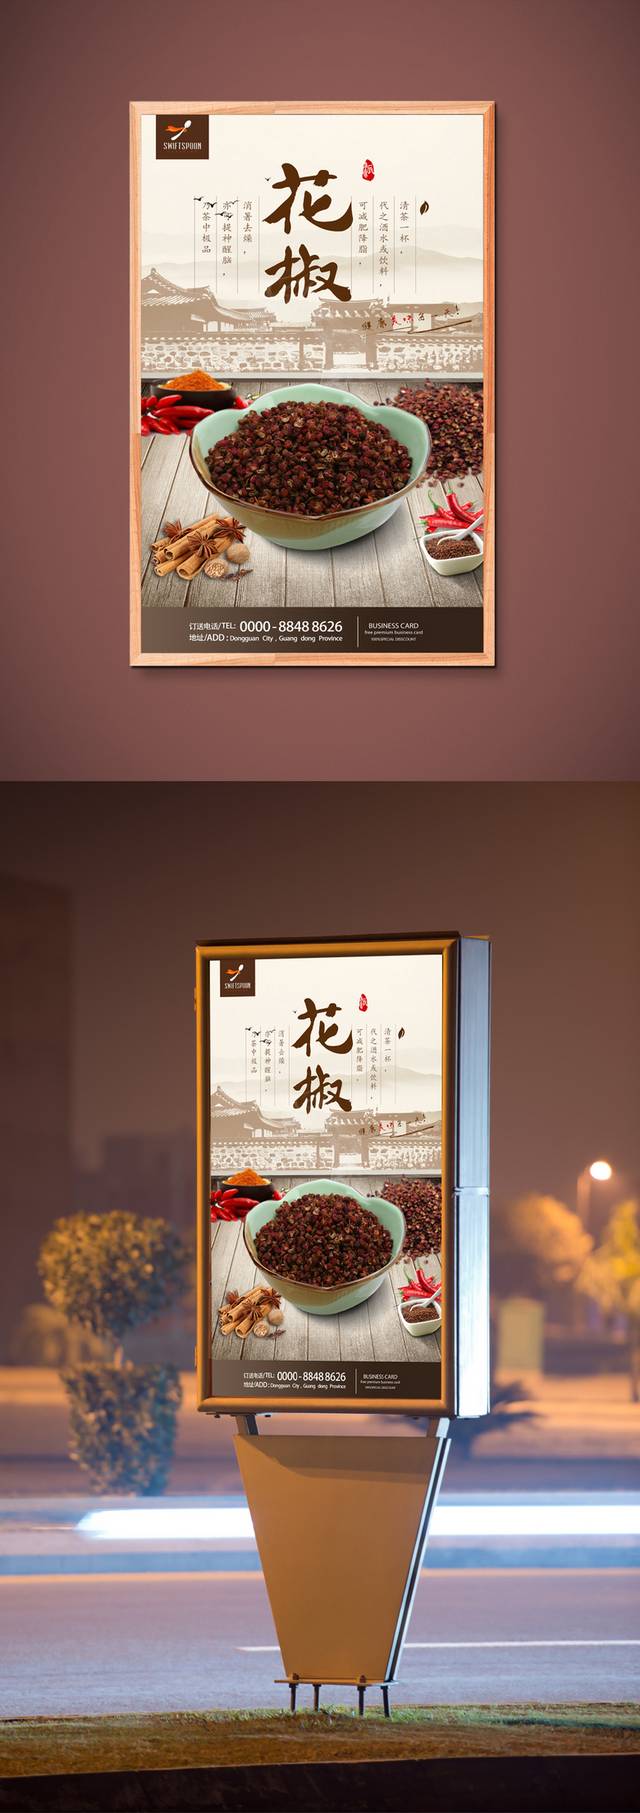 中国风花椒宣传海报设计